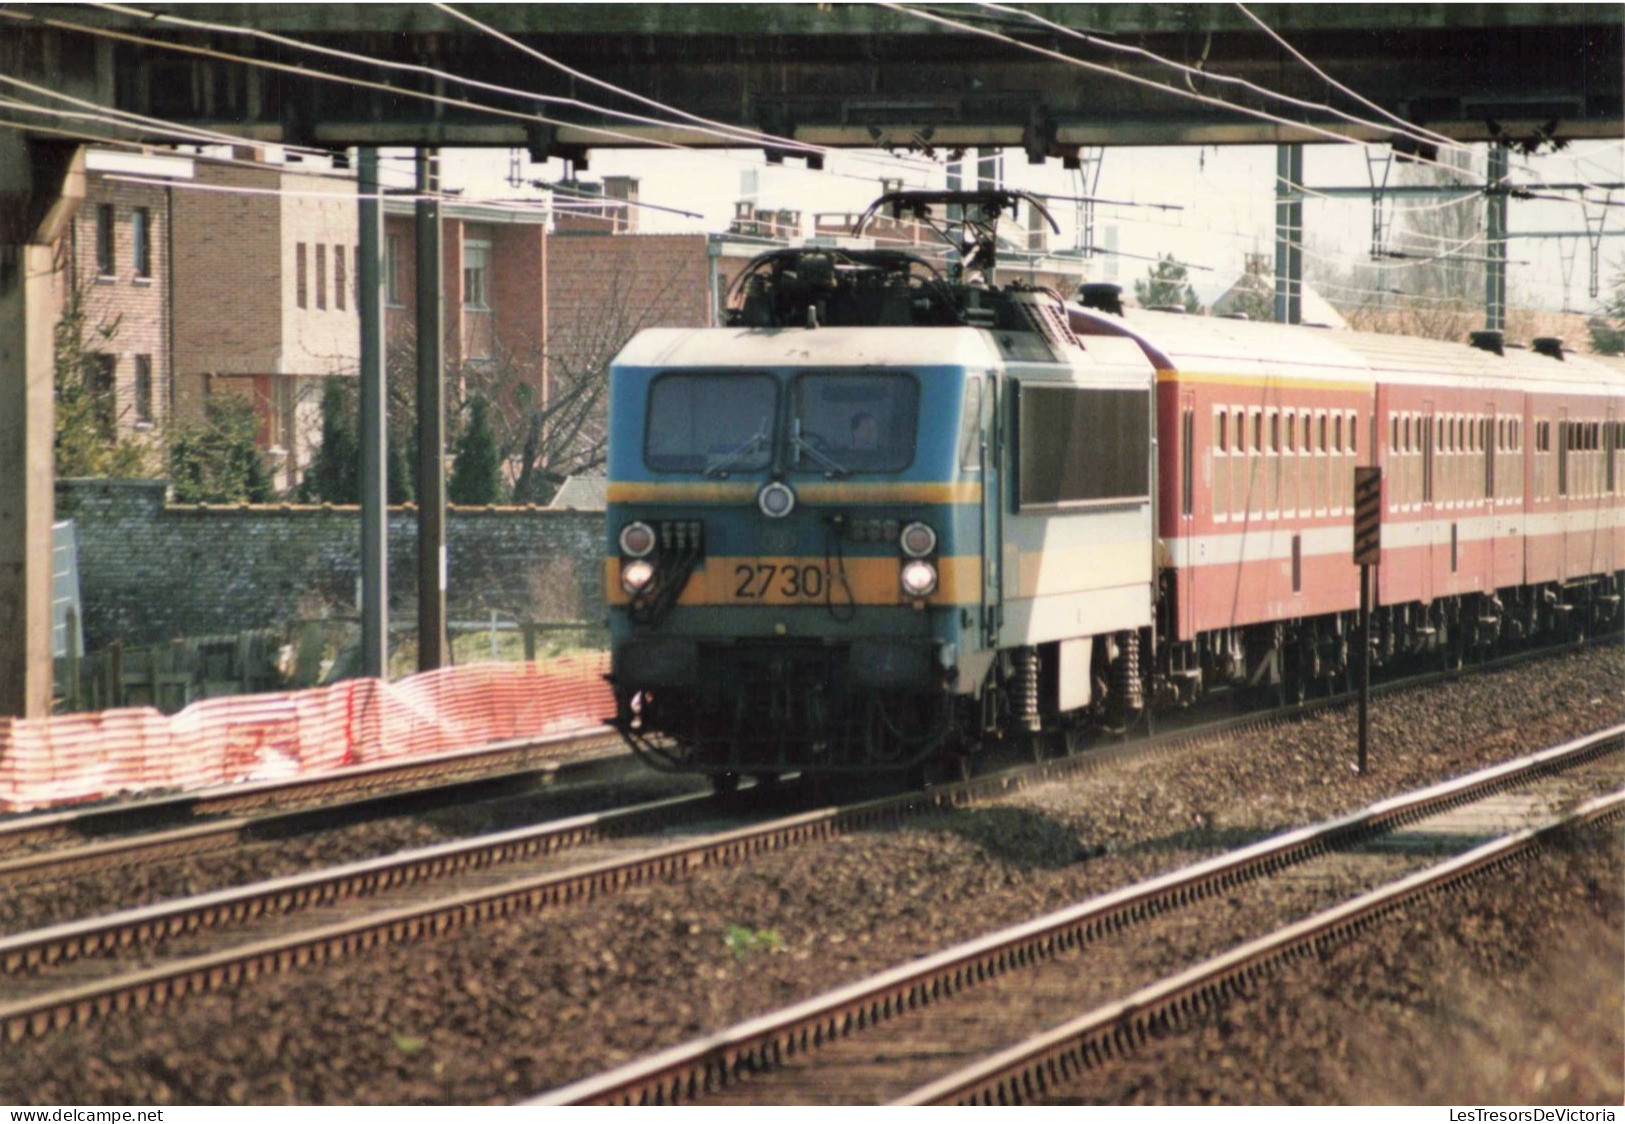 TRANSPORT - Chemin De Fer - Un Train En Marche - Colorisé - Carte Postale - Trains